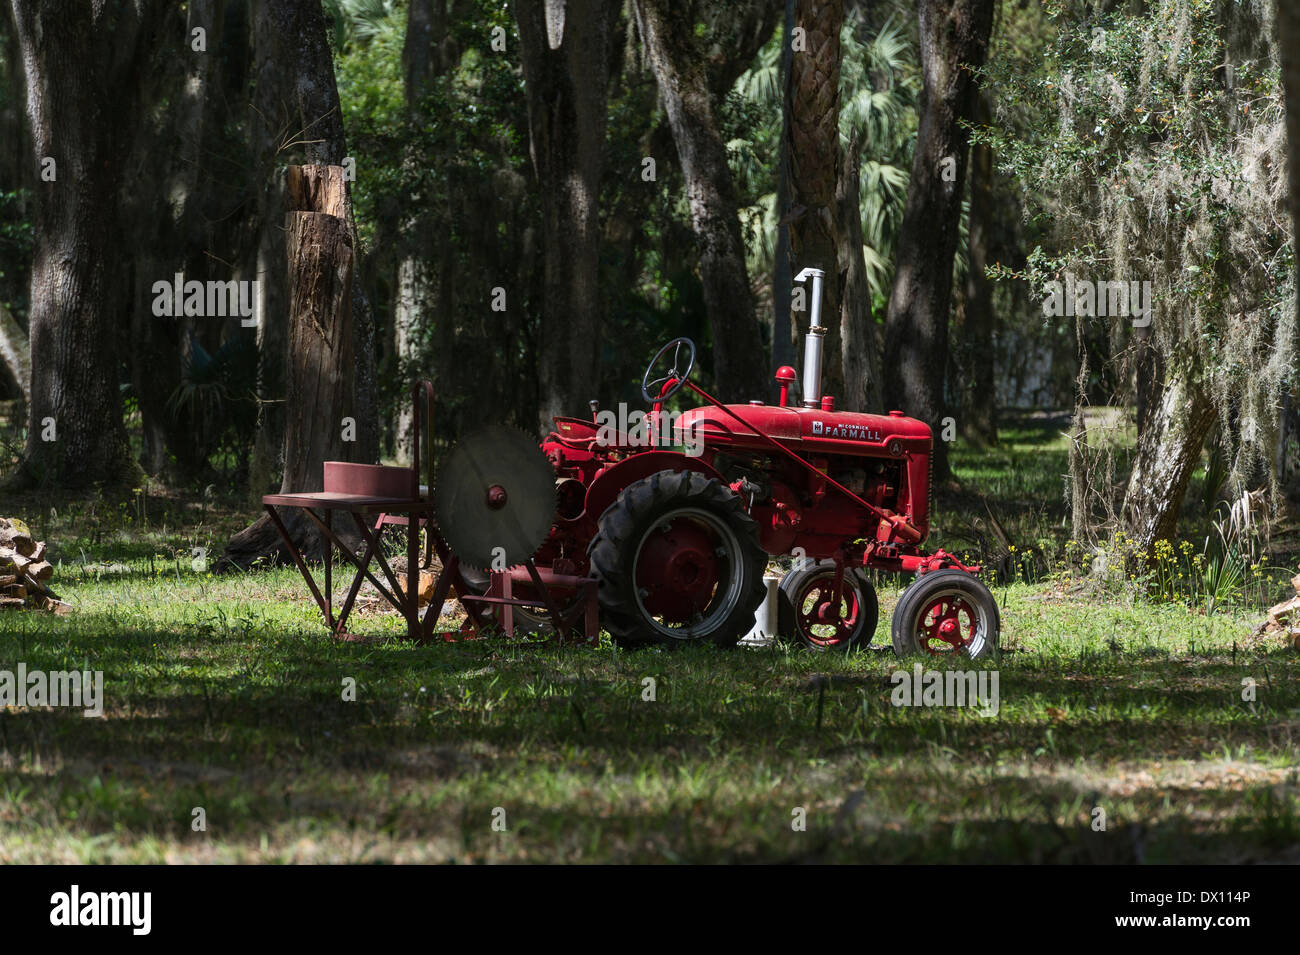 International Harvester Farmall McCormick un tracteur antique setup pour couper du bois dans la région de Leesburg, Floride USA Banque D'Images